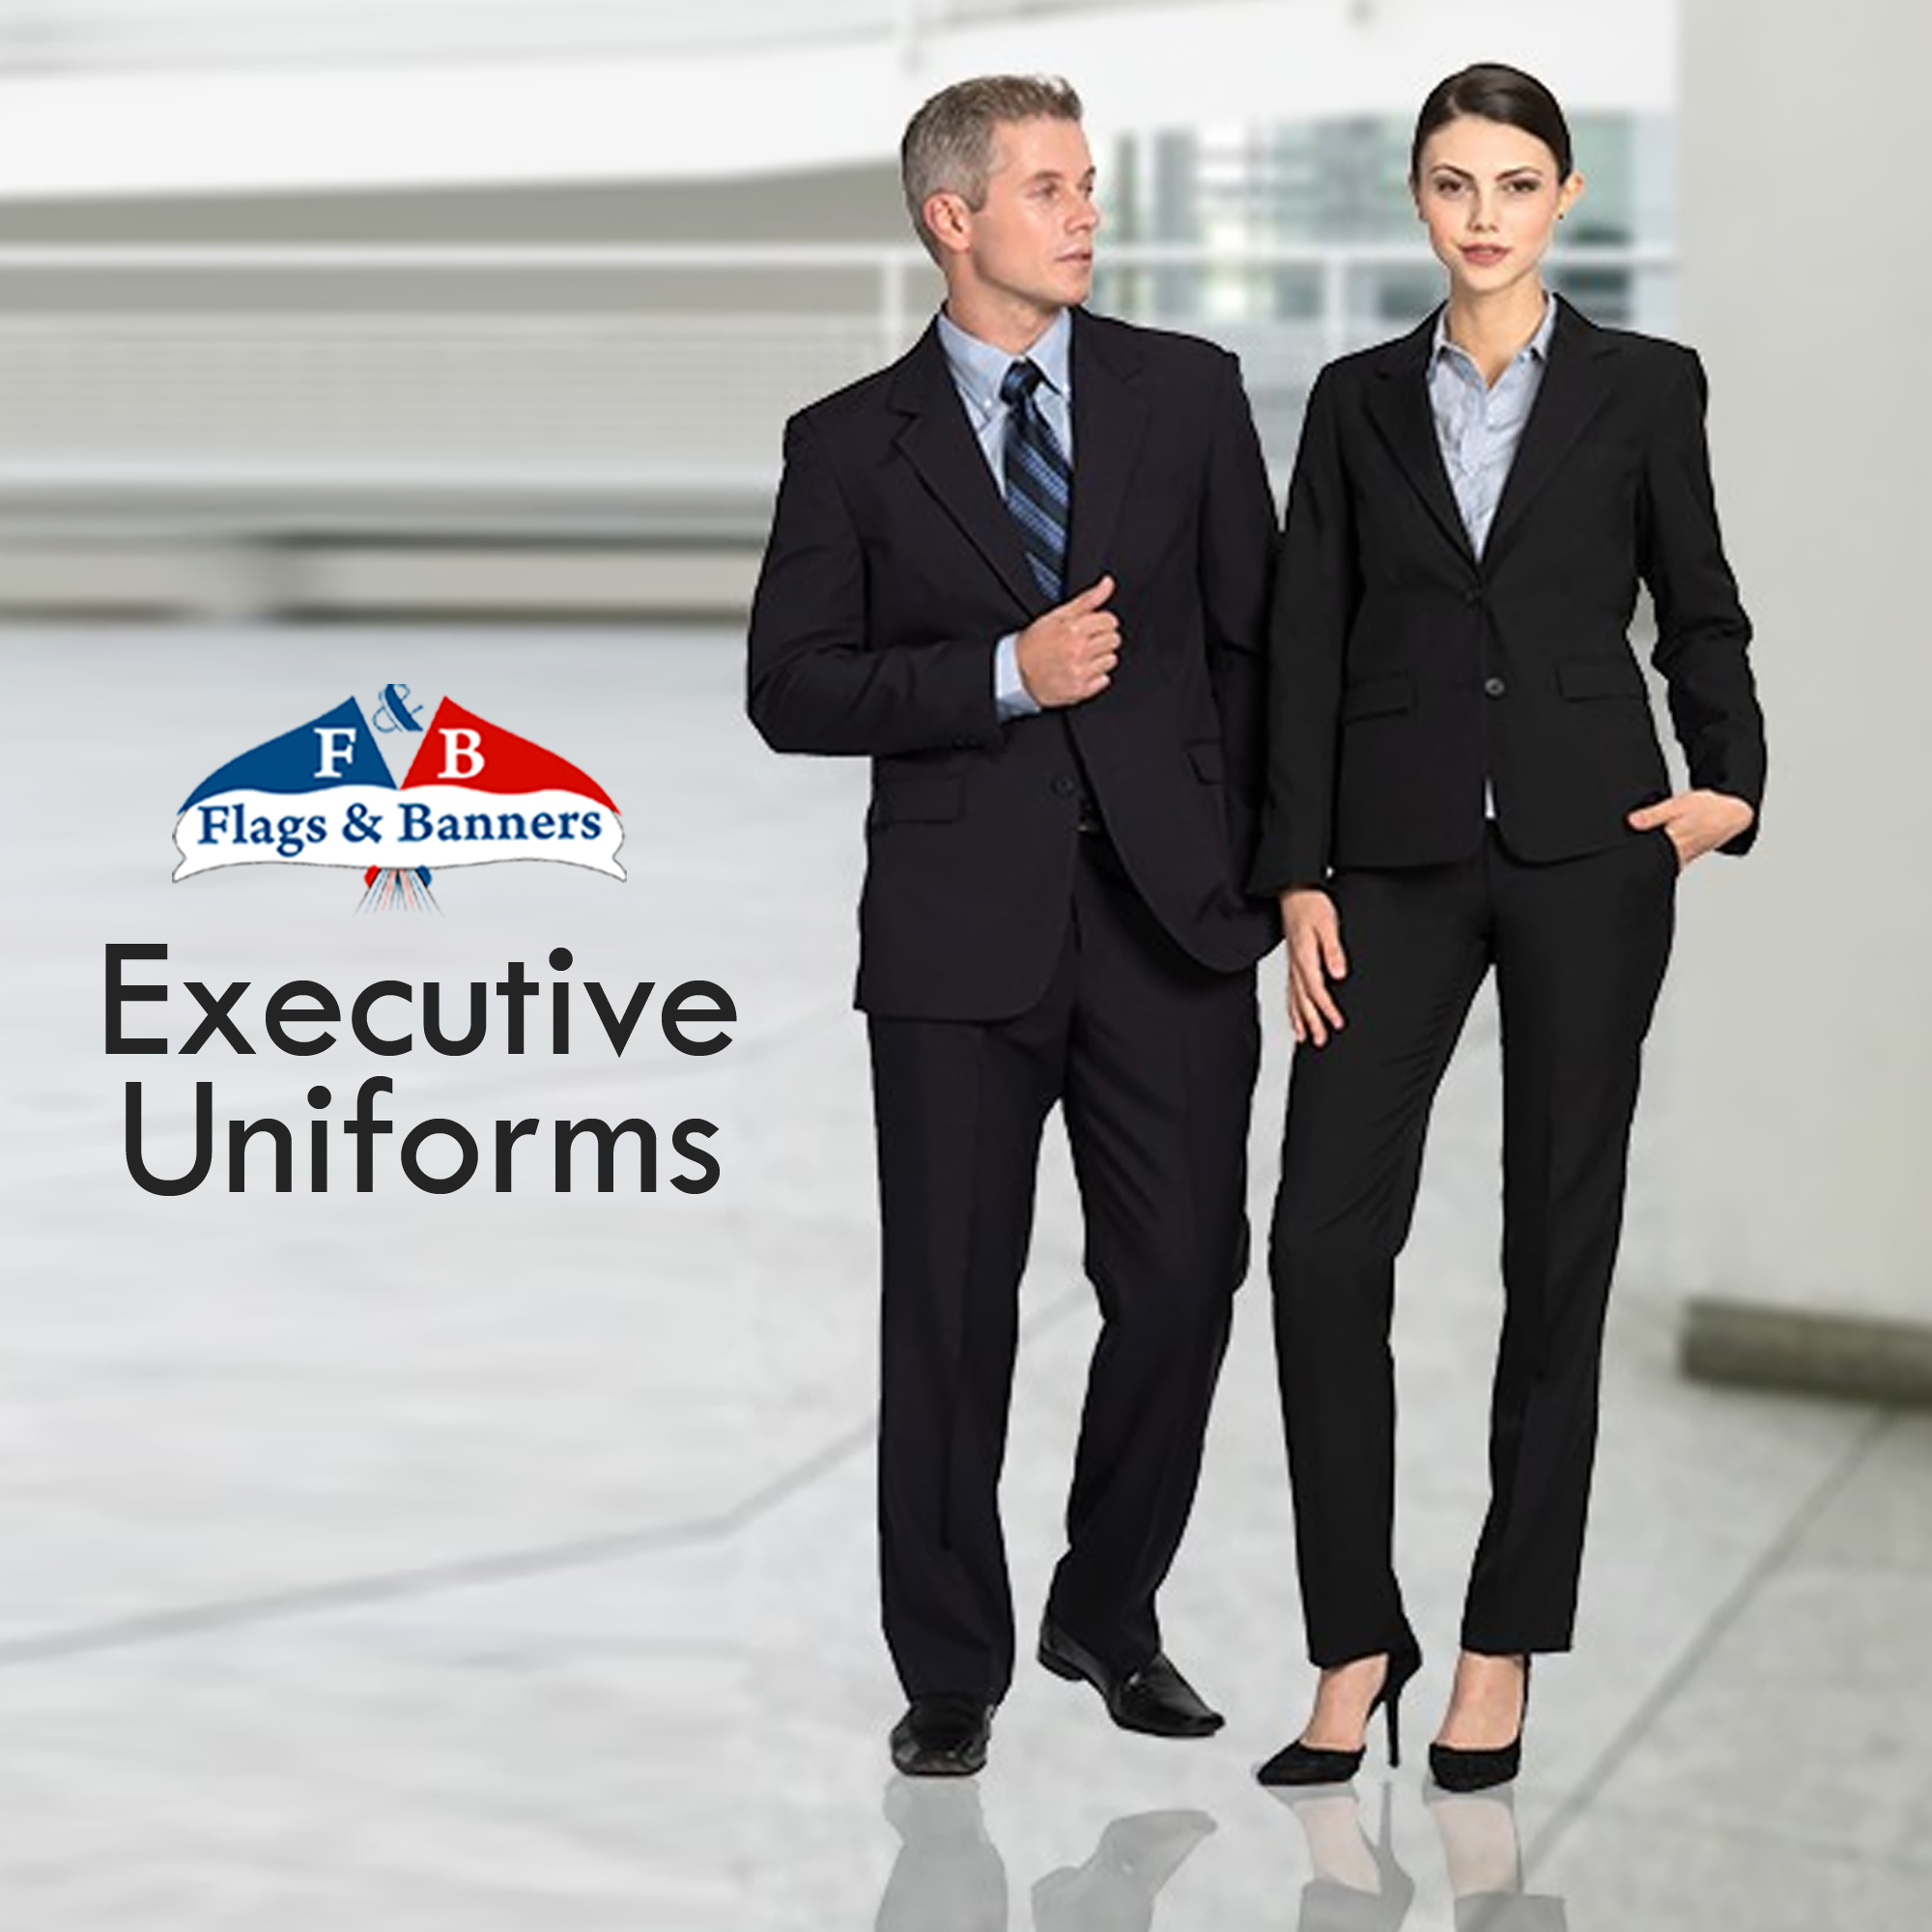 Executive Uniforms